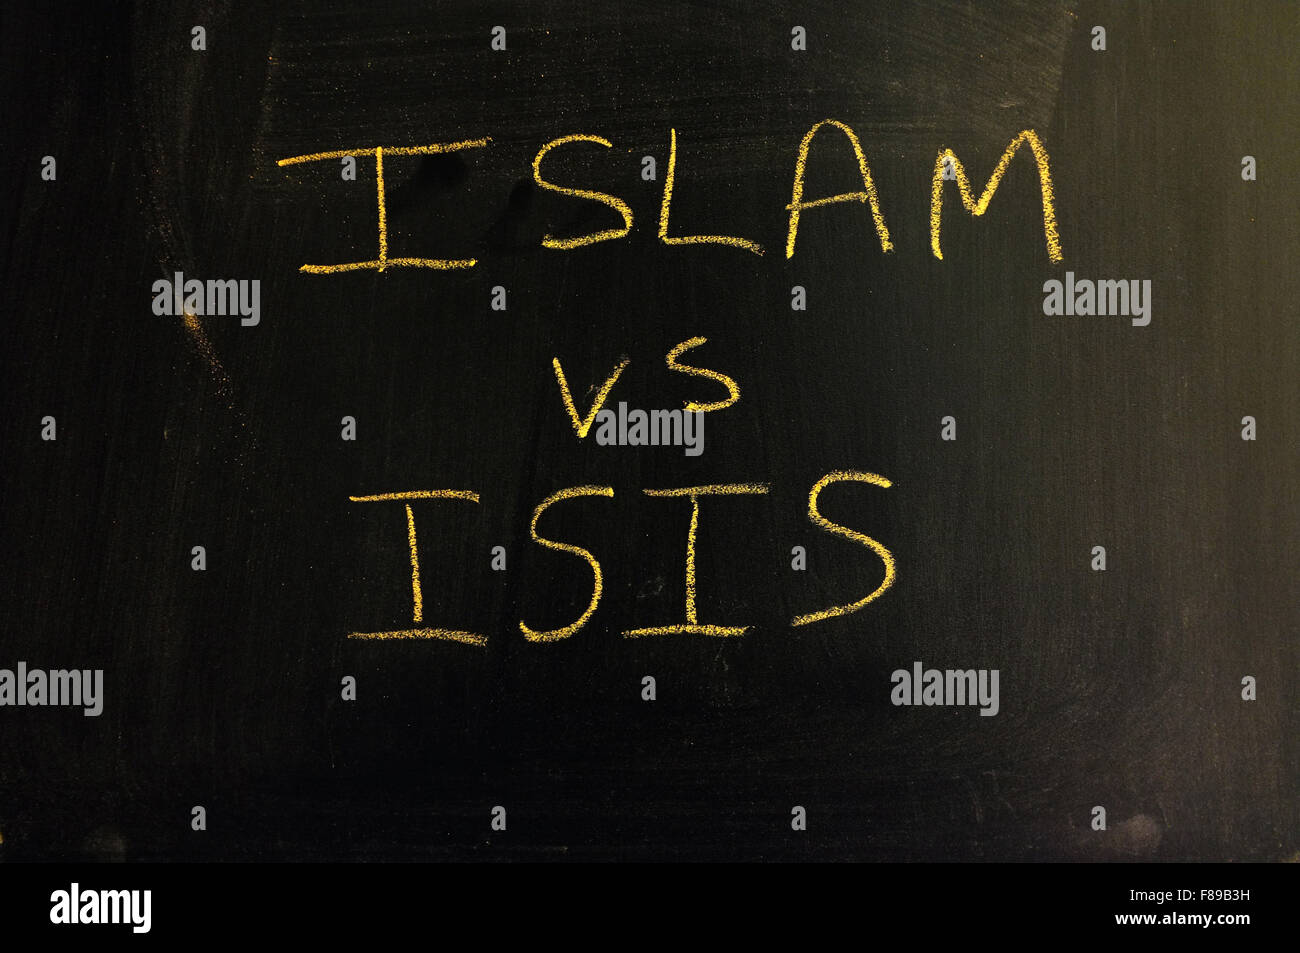 Islam gegen ISIS mit Kreide auf eine Tafel geschrieben. Stockfoto